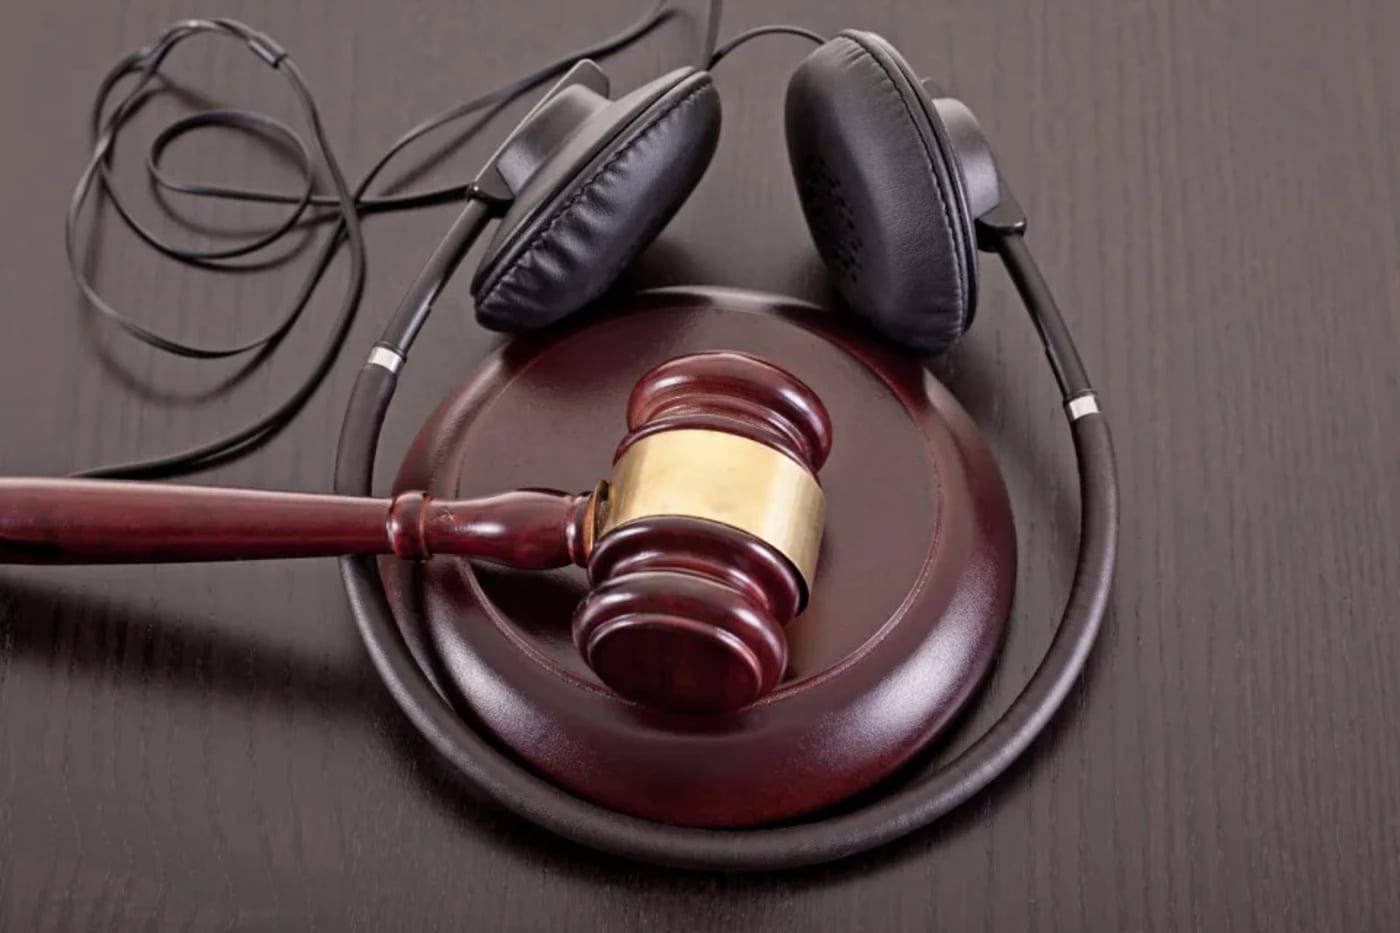 Appeals court overturns $1 billion copyright lawsuit against Cox